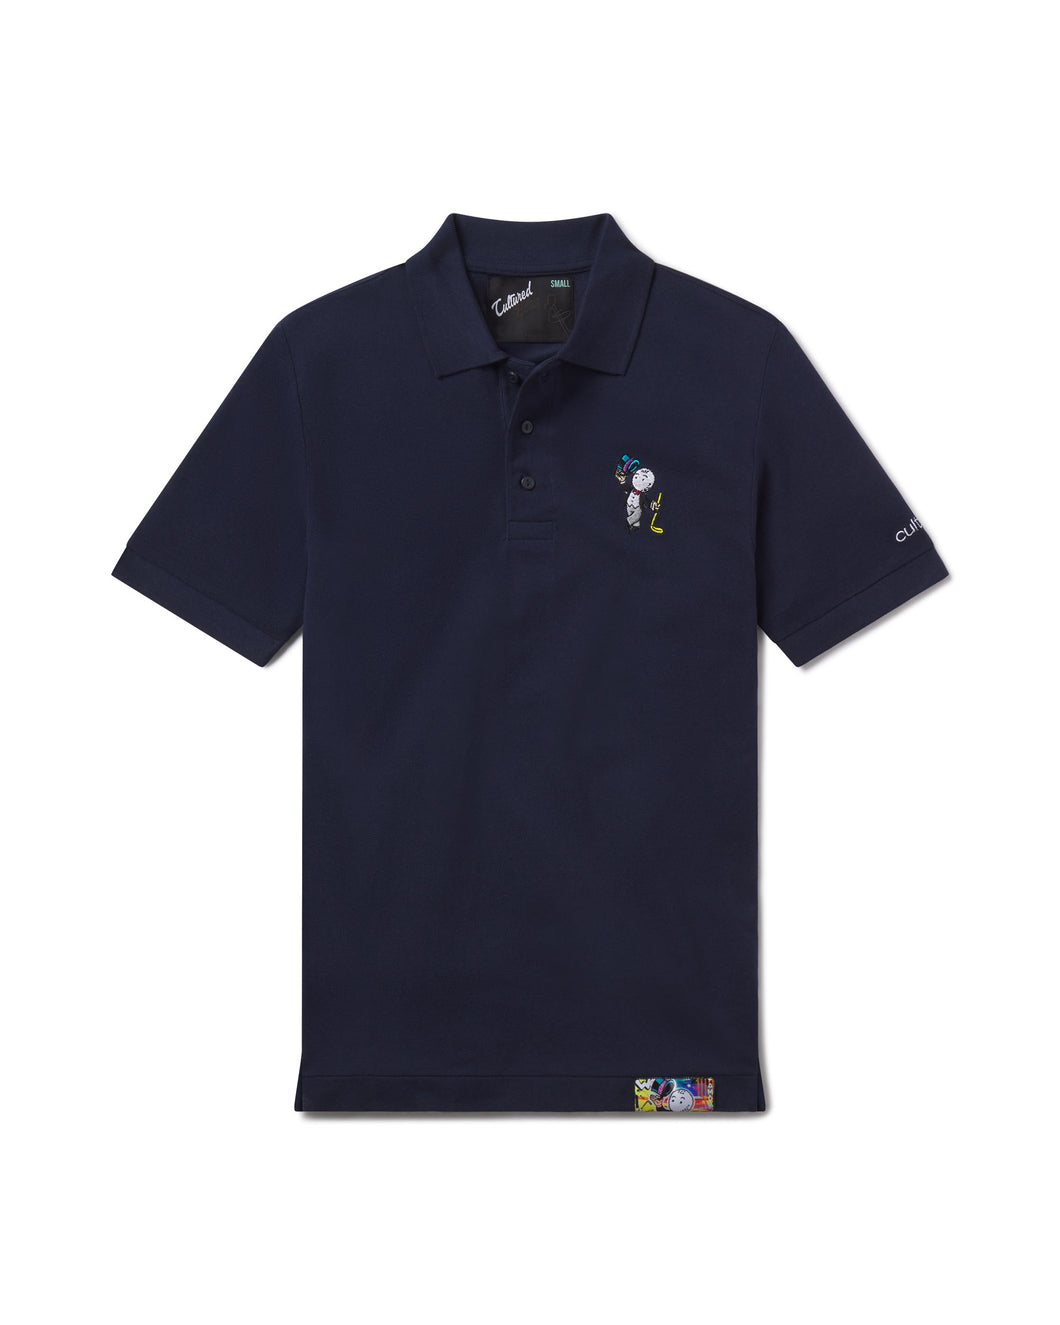 Cultured Golf Shirt Navy